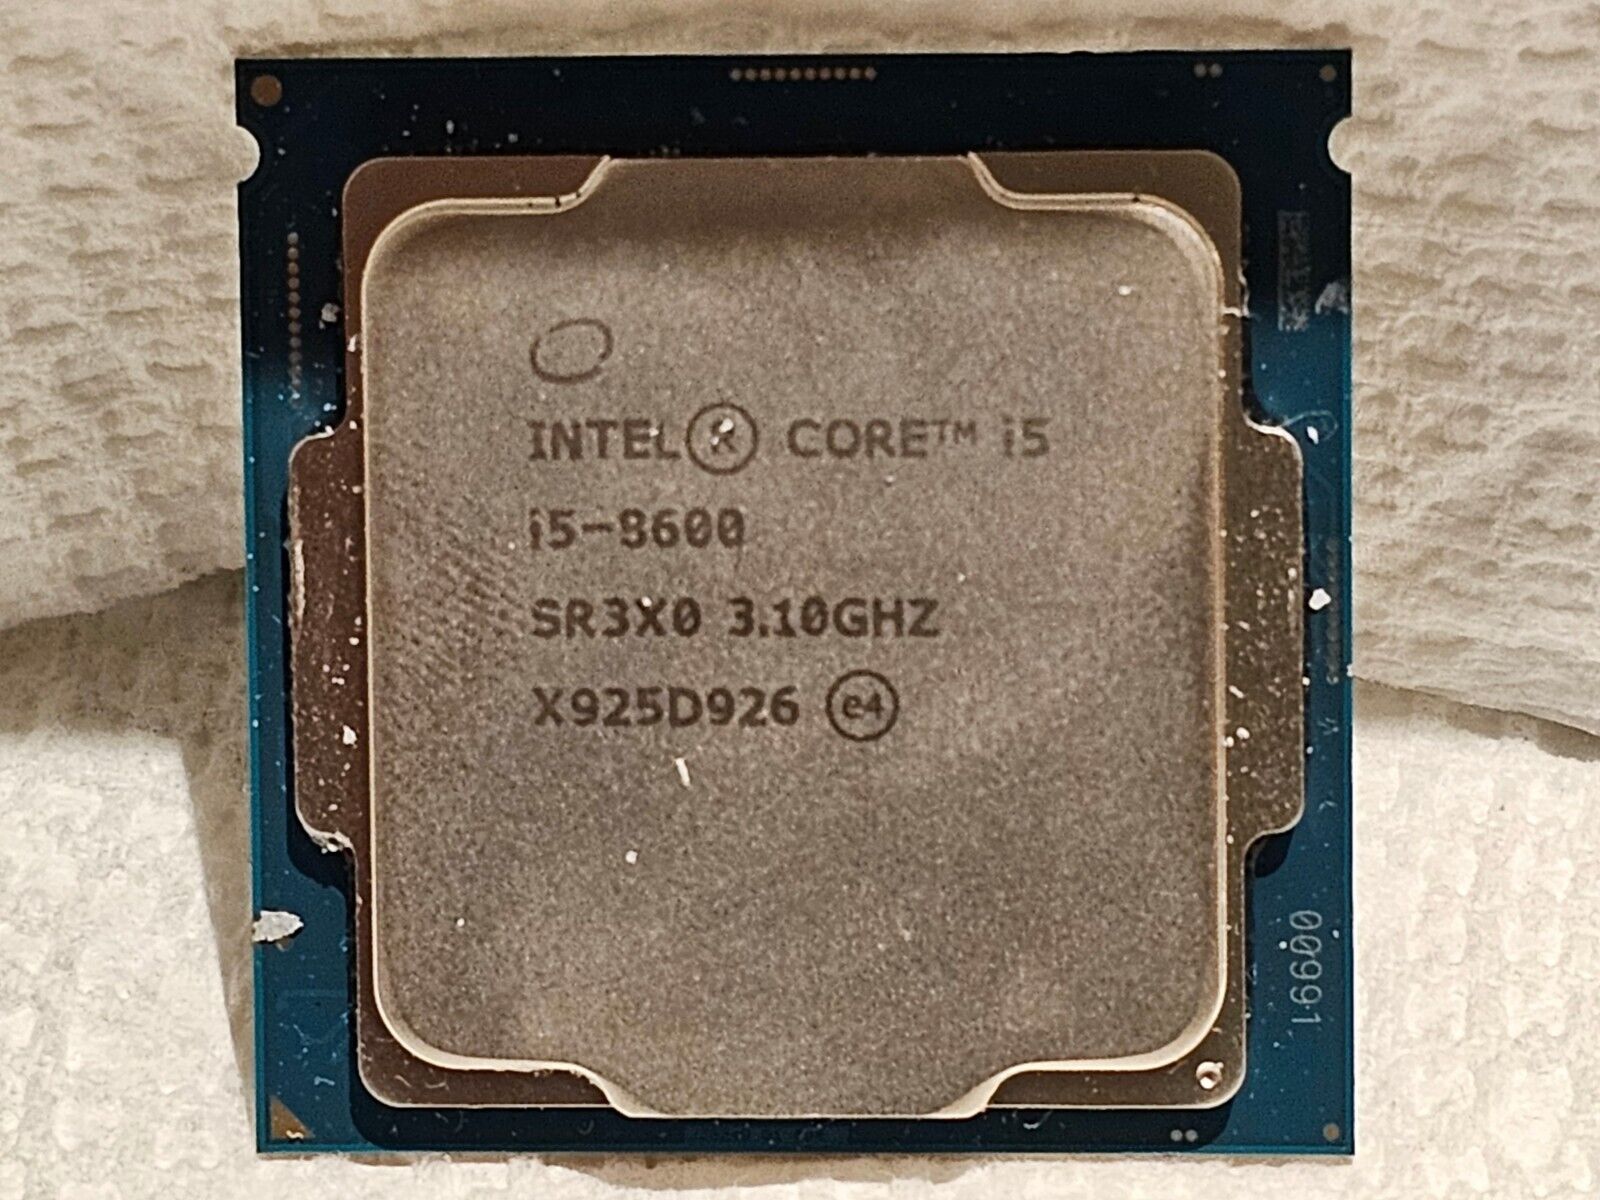 Intel Core I5-8600 3.10GHZ Processor